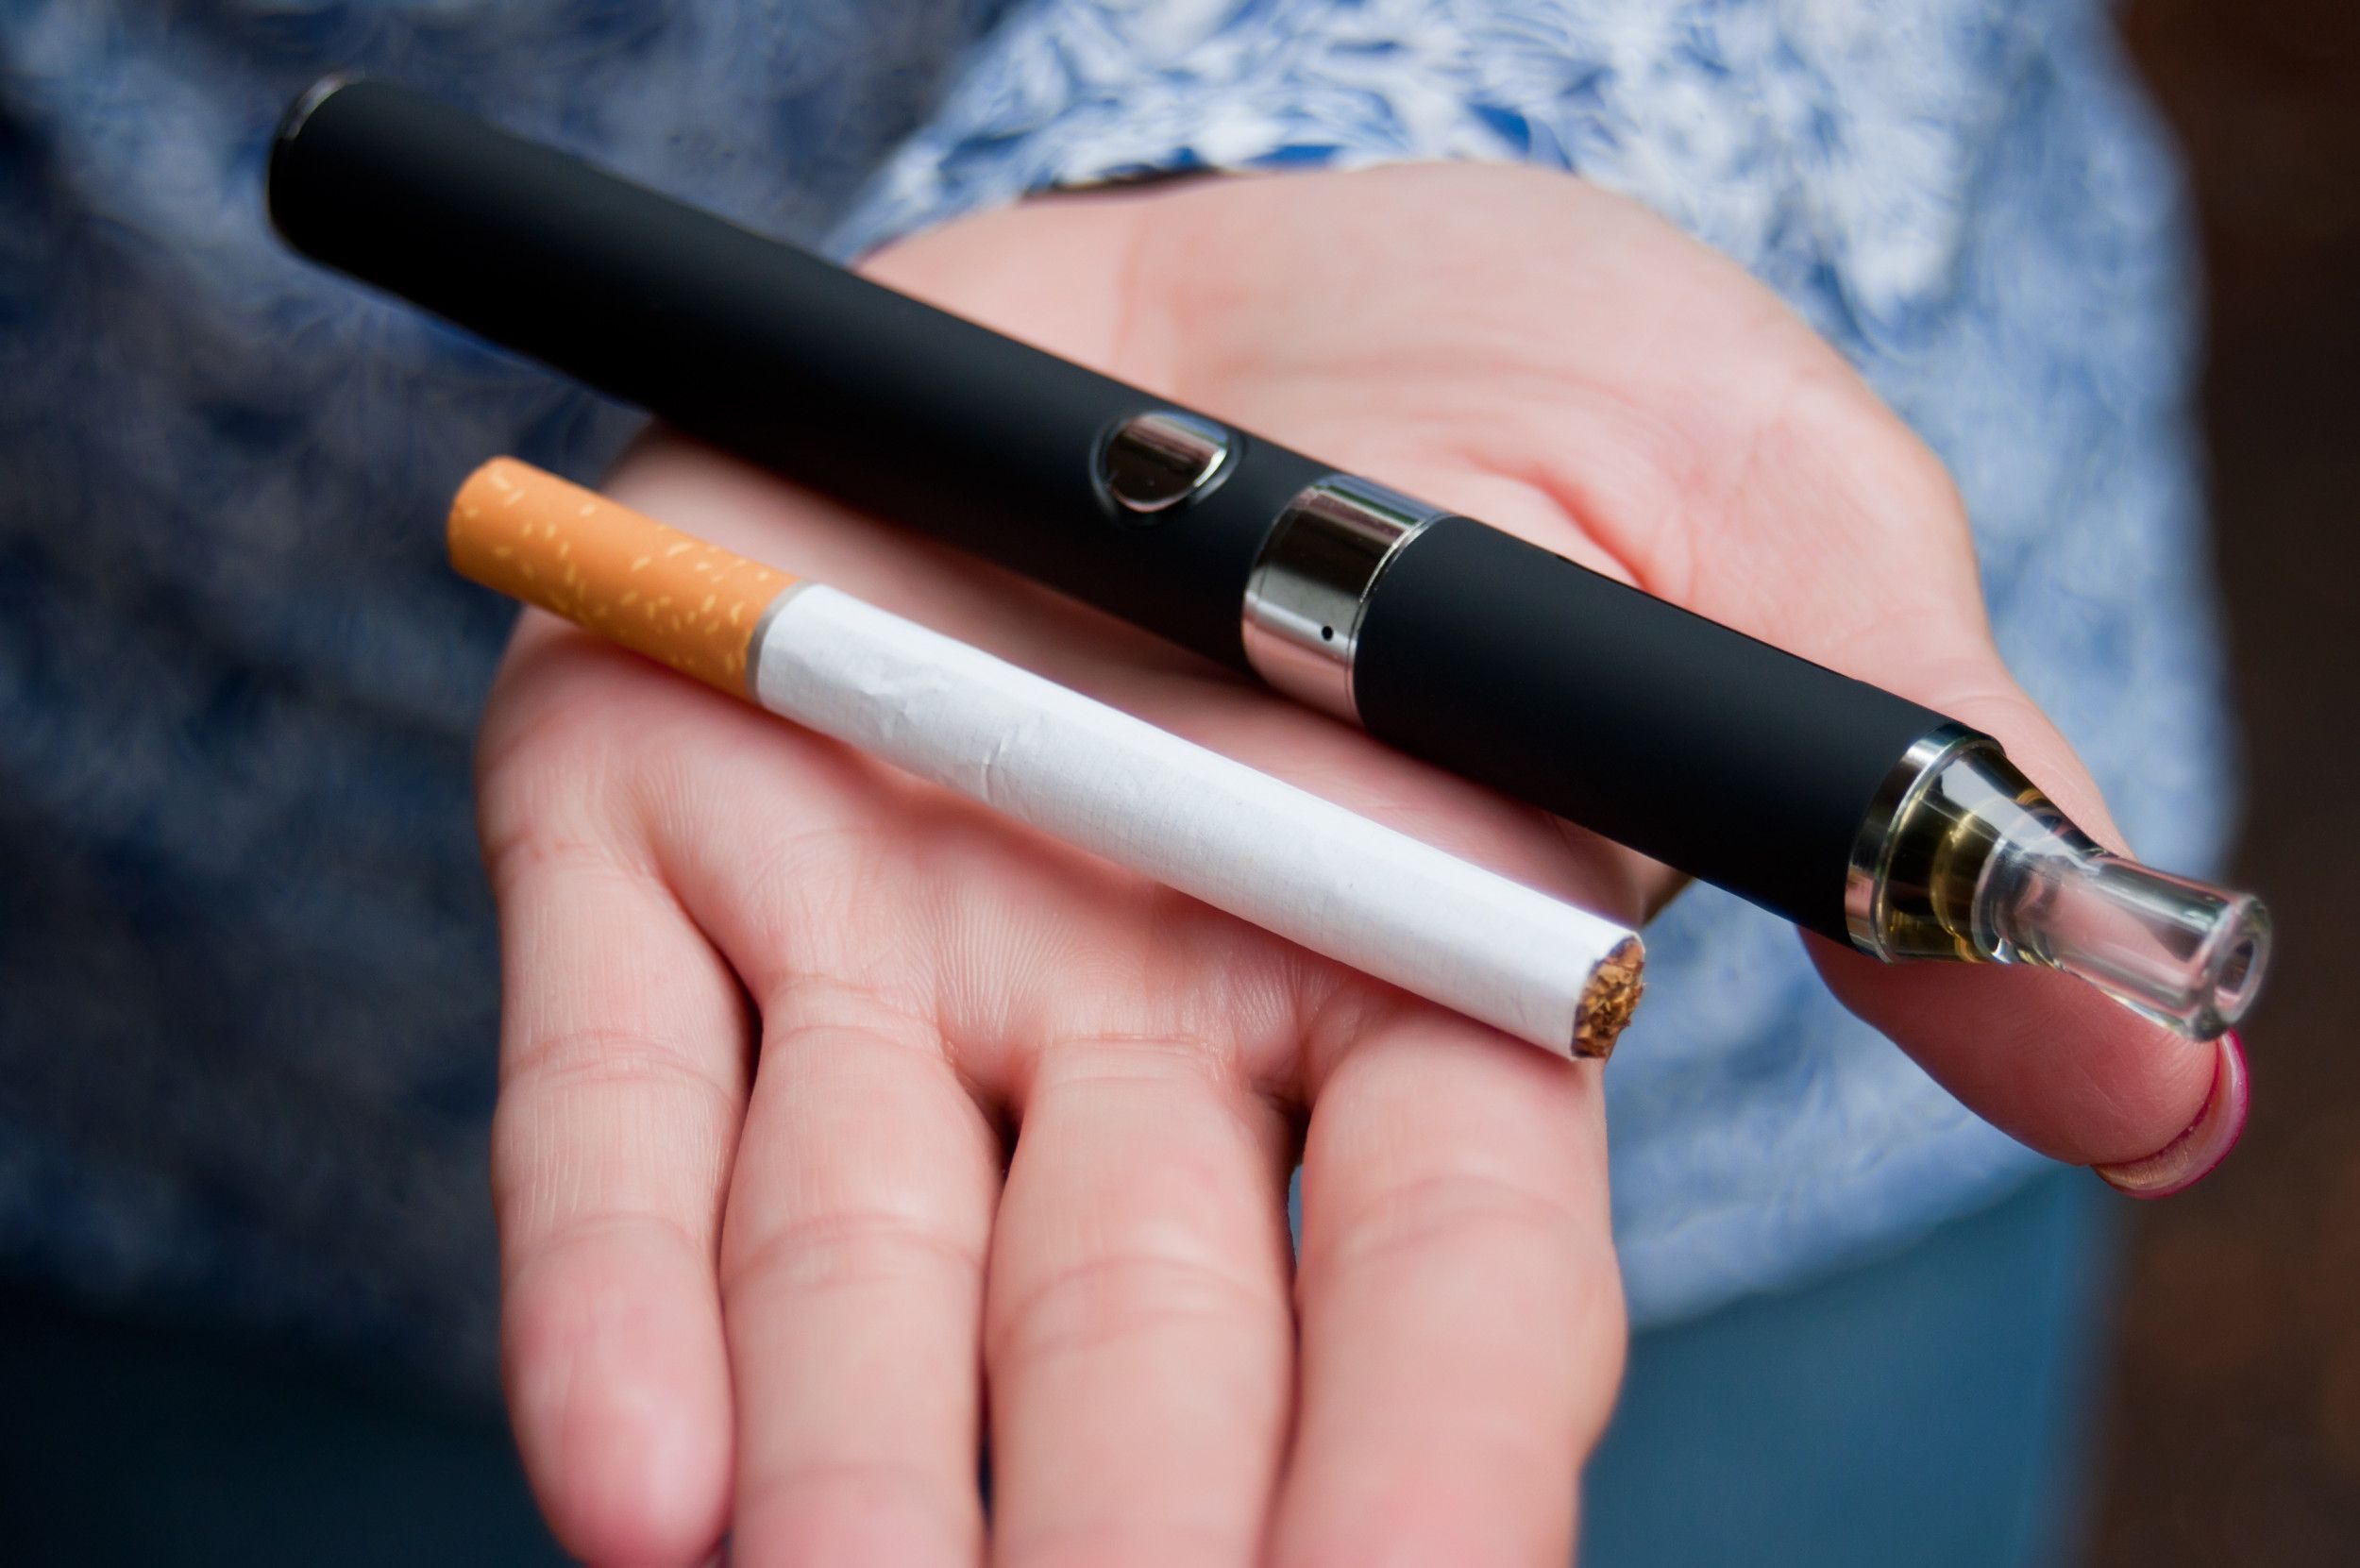 使用電子煙增加肺部慢性疾病風險